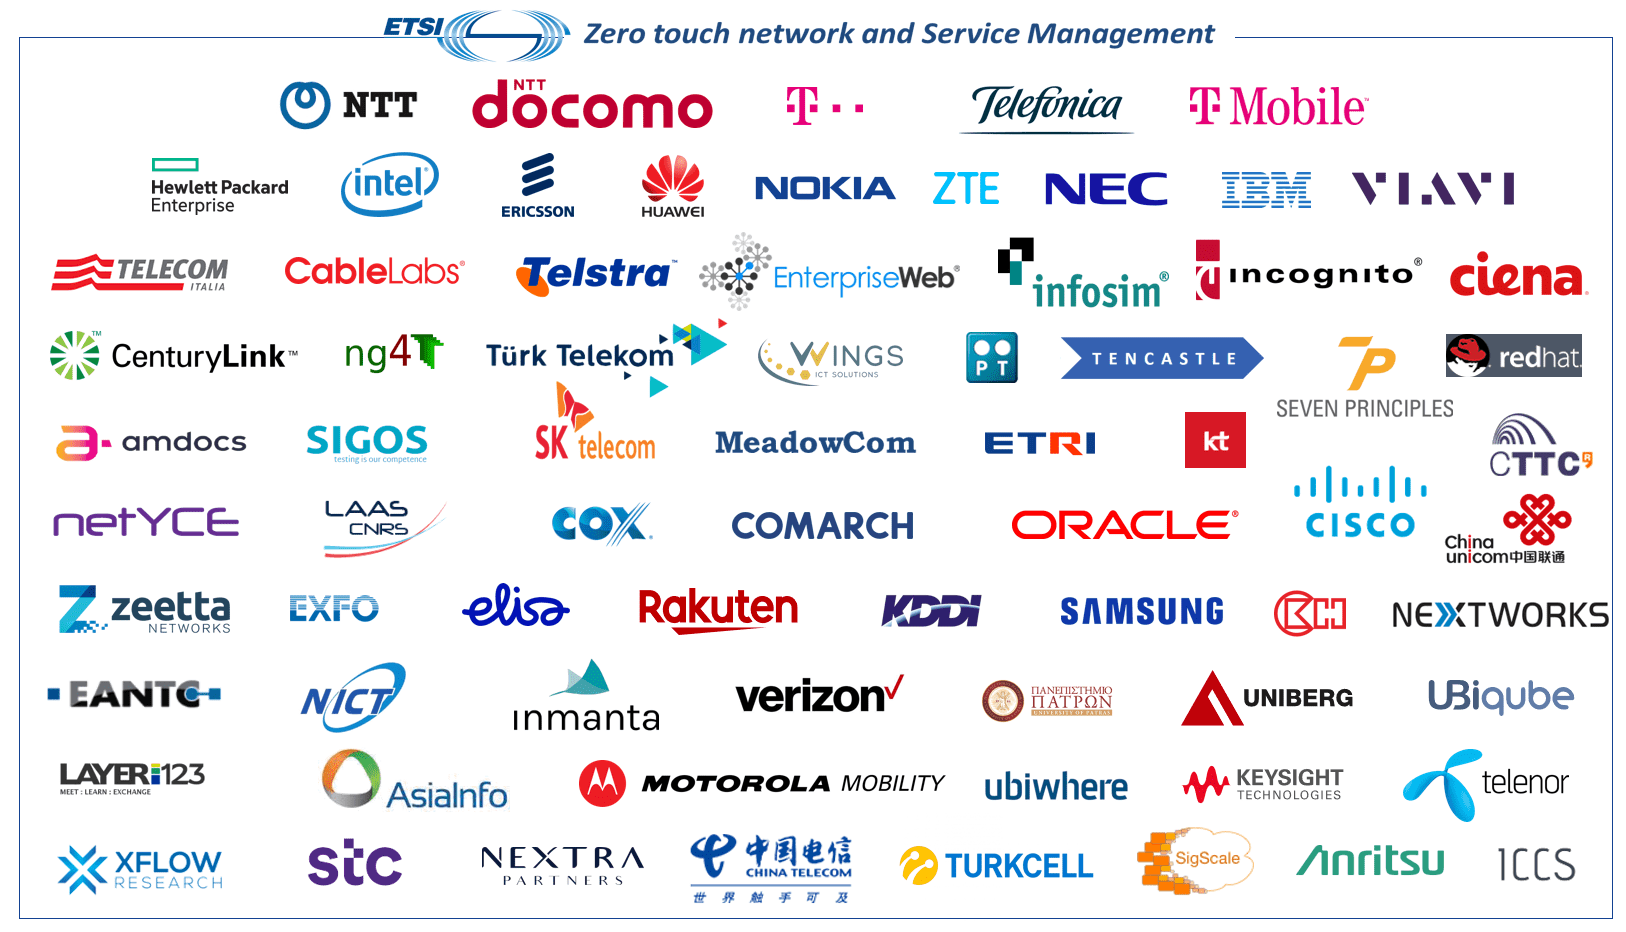 Etsi Zsm Zero Touch Network Service Management